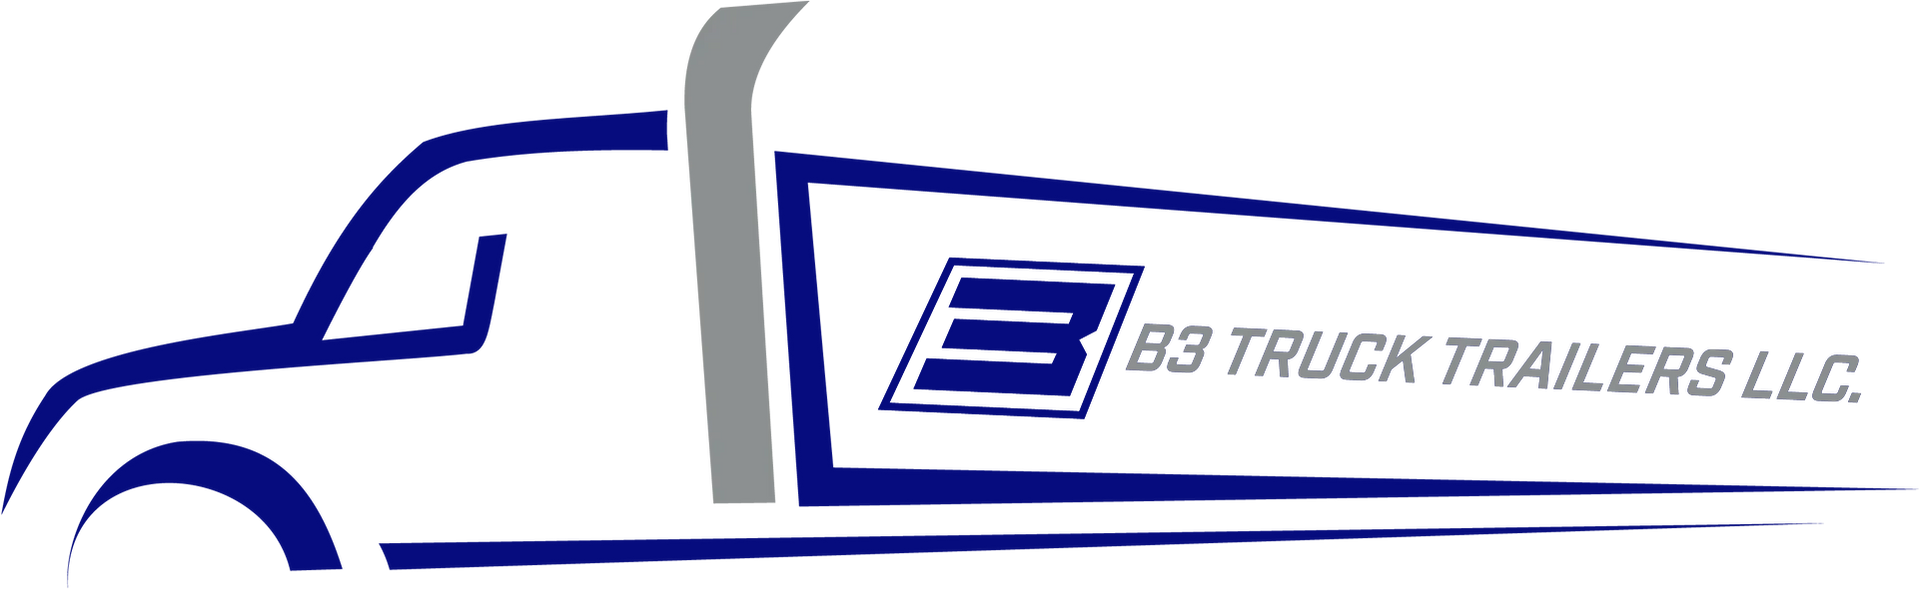 B3 Truck Trailers LLC Logo